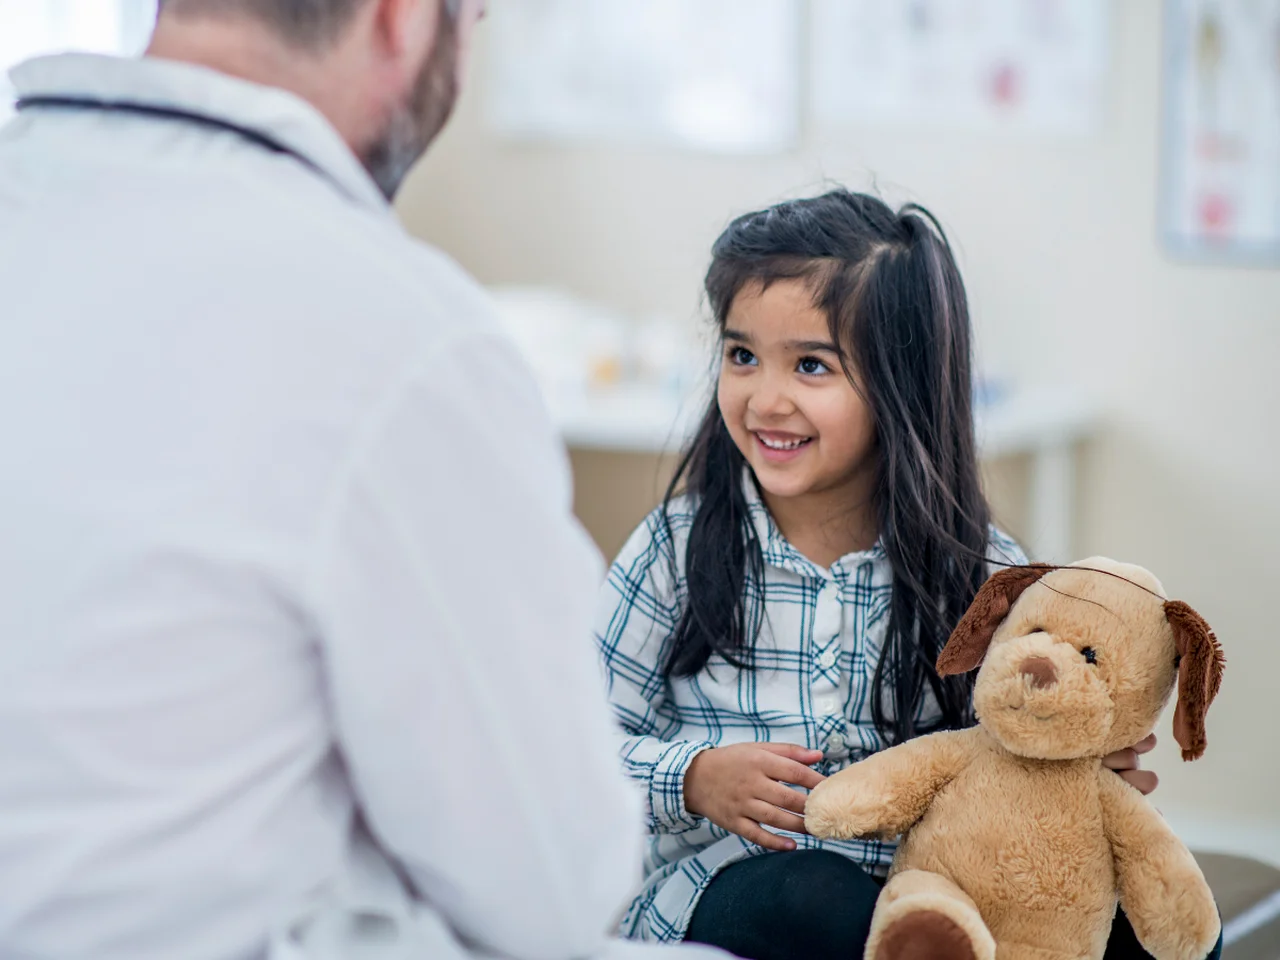 Jak przygotować dziecko na wizytę u lekarza?